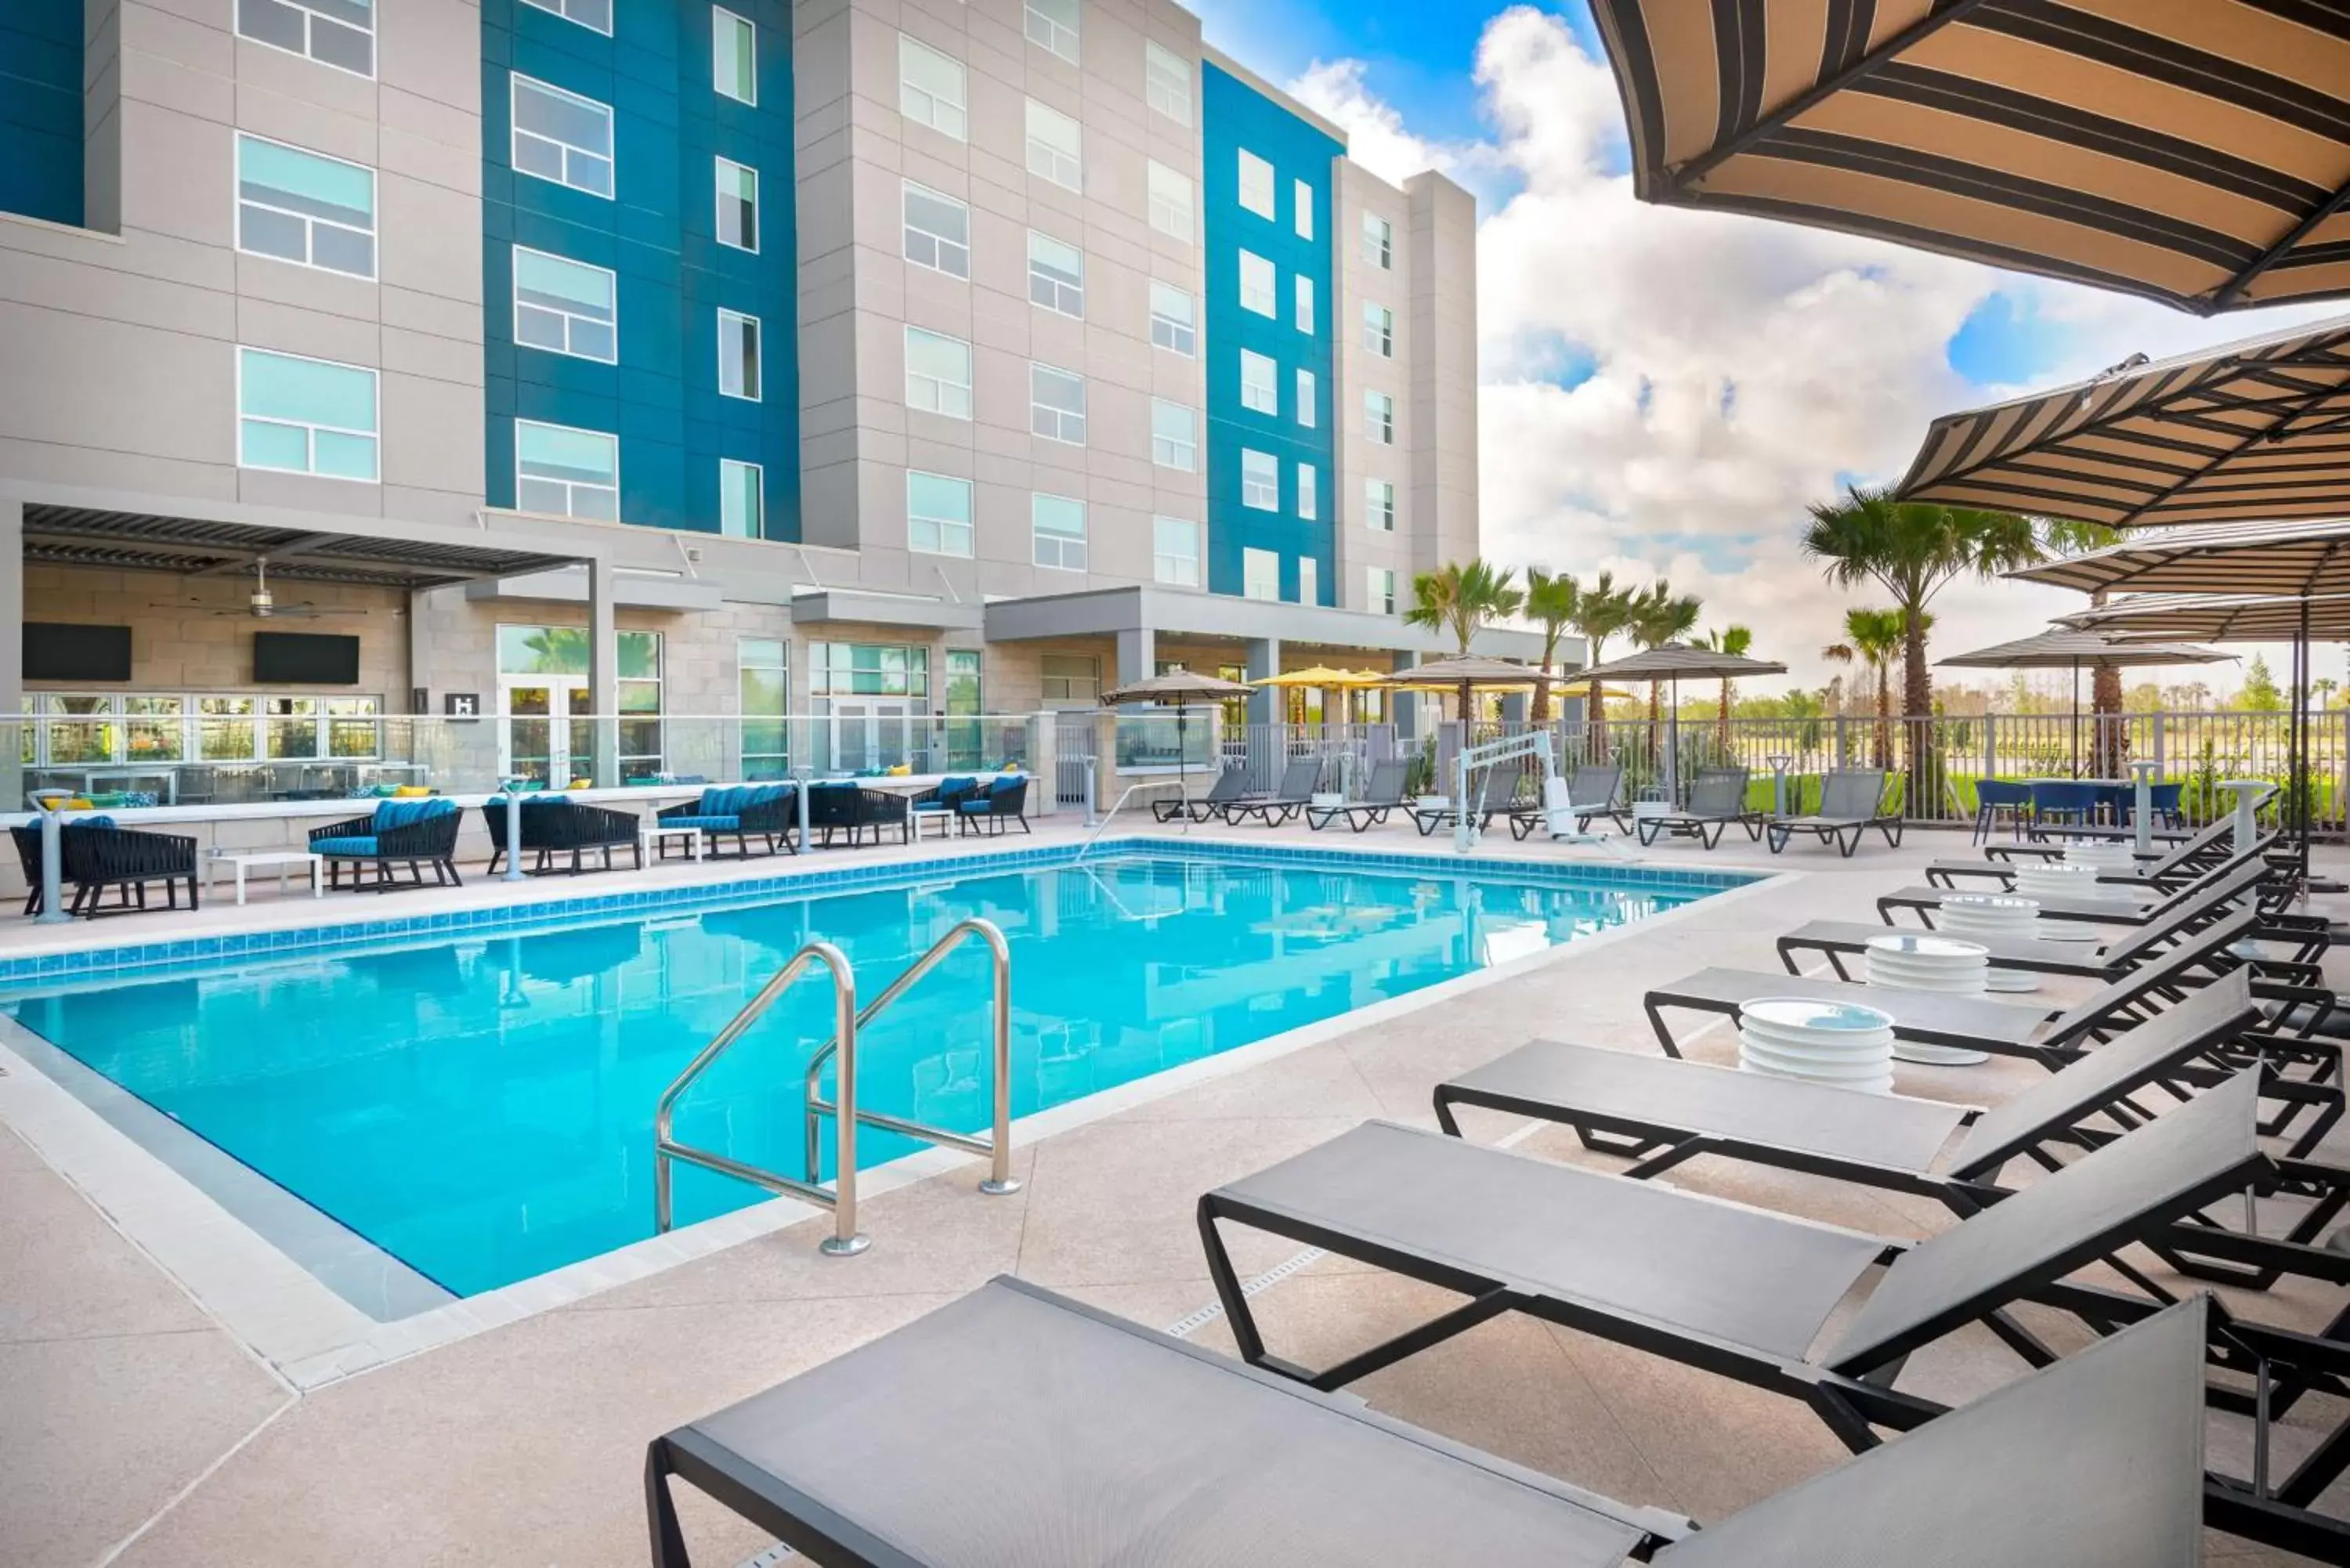 Swimming Pool in Hyatt House Orlando Airport